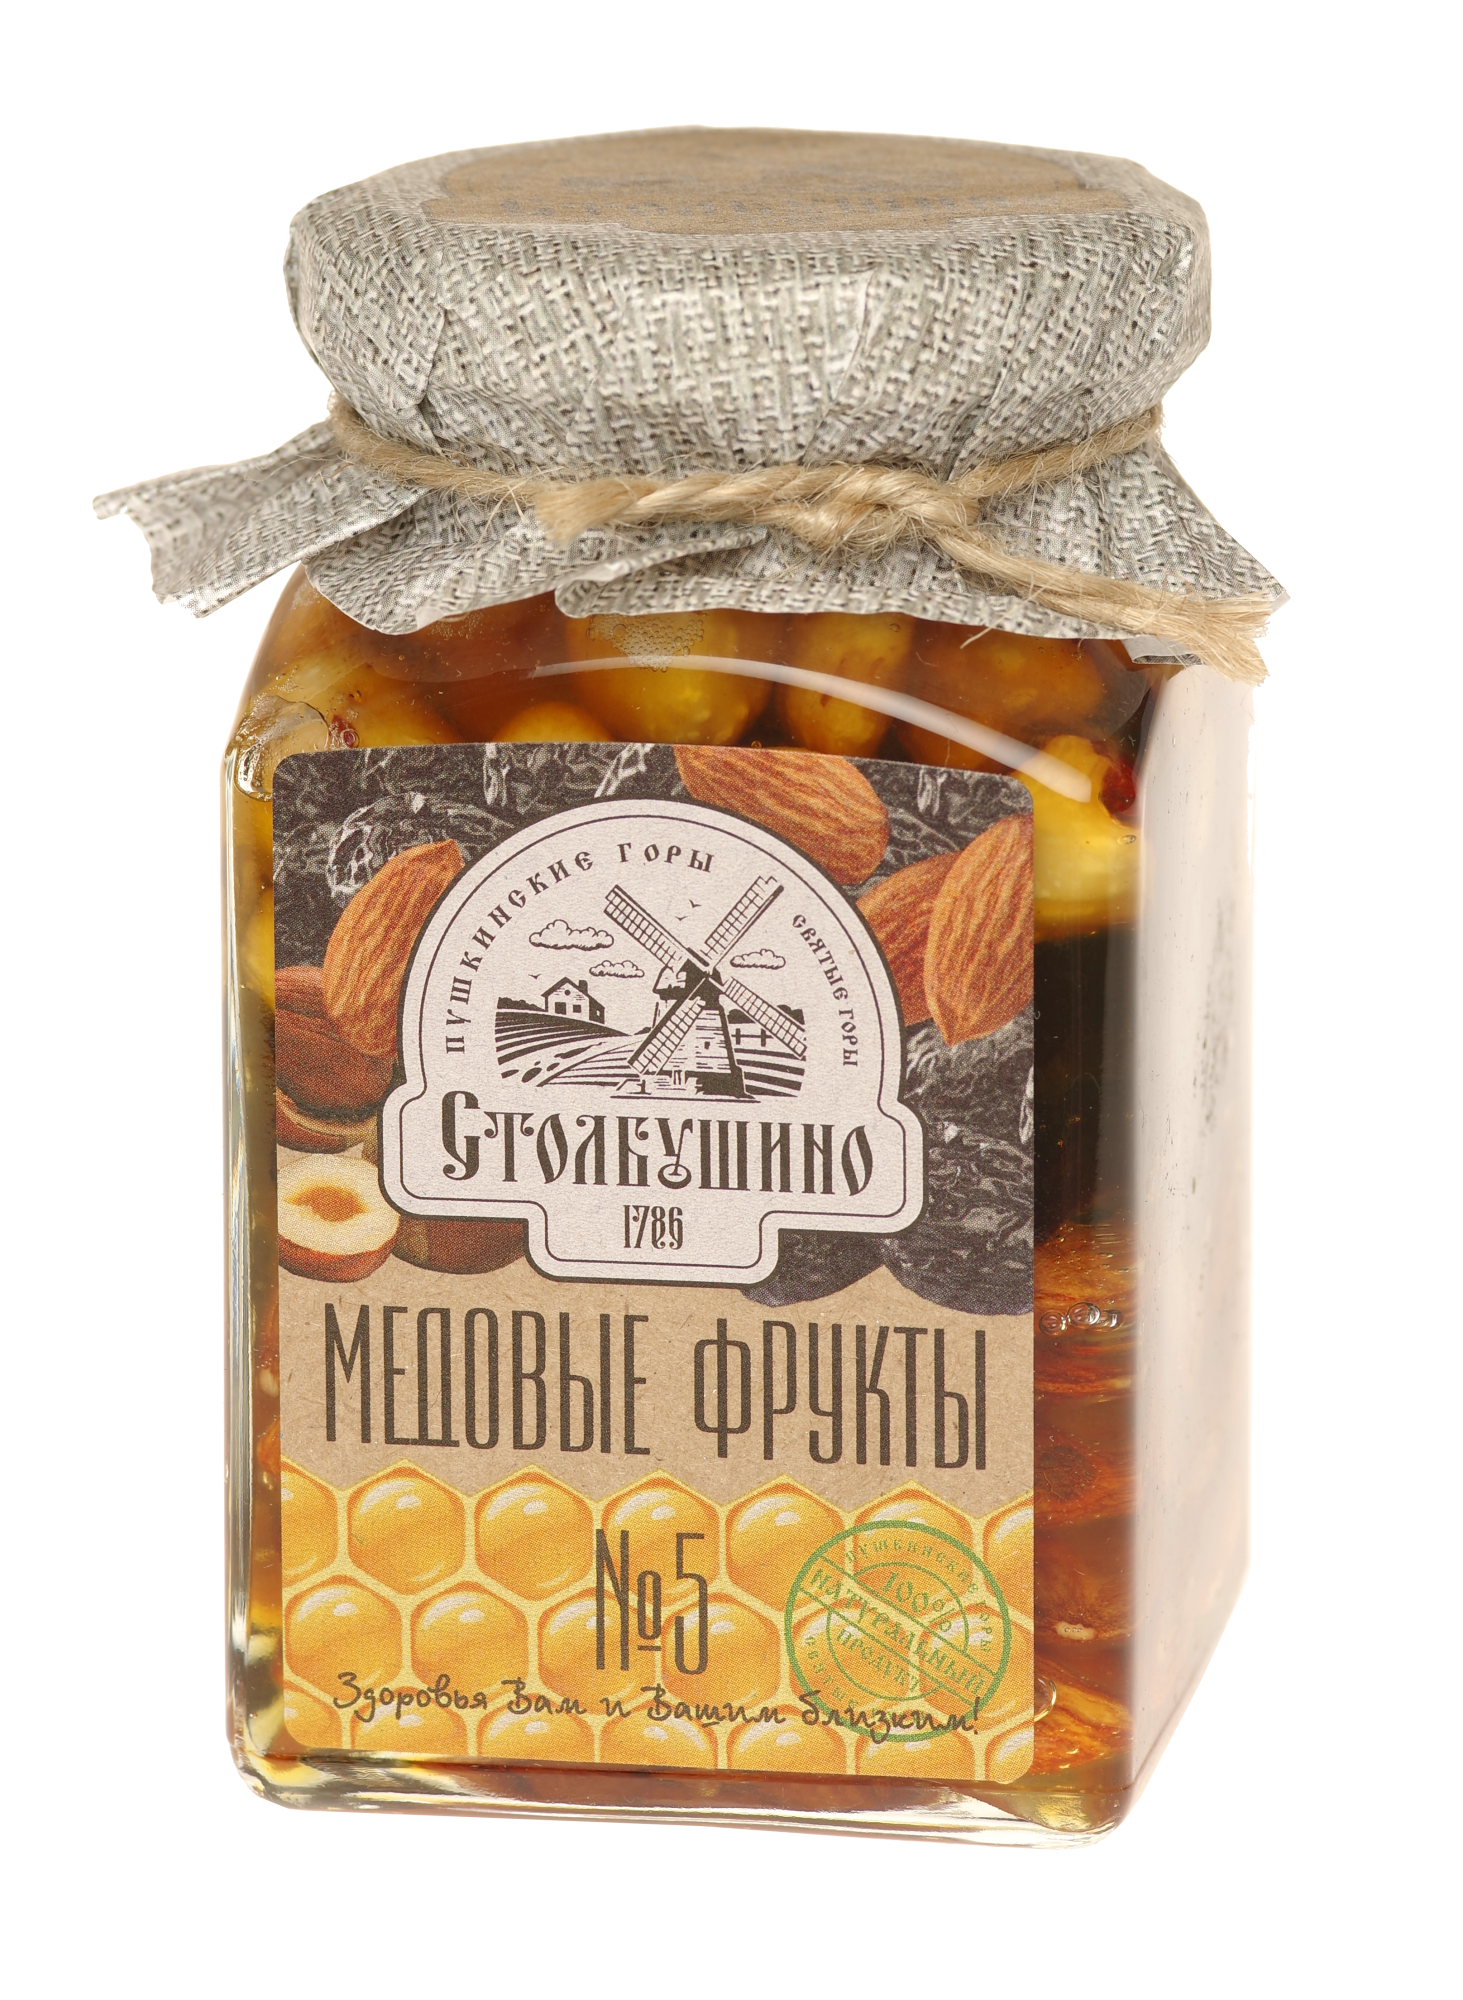 Honigfrucht. Getrocknete Früchte und Nüsse in Honig "Stolbushinsky" (Honig, Pflaumen, Mandeln, Haselnüsse) Nr. 5